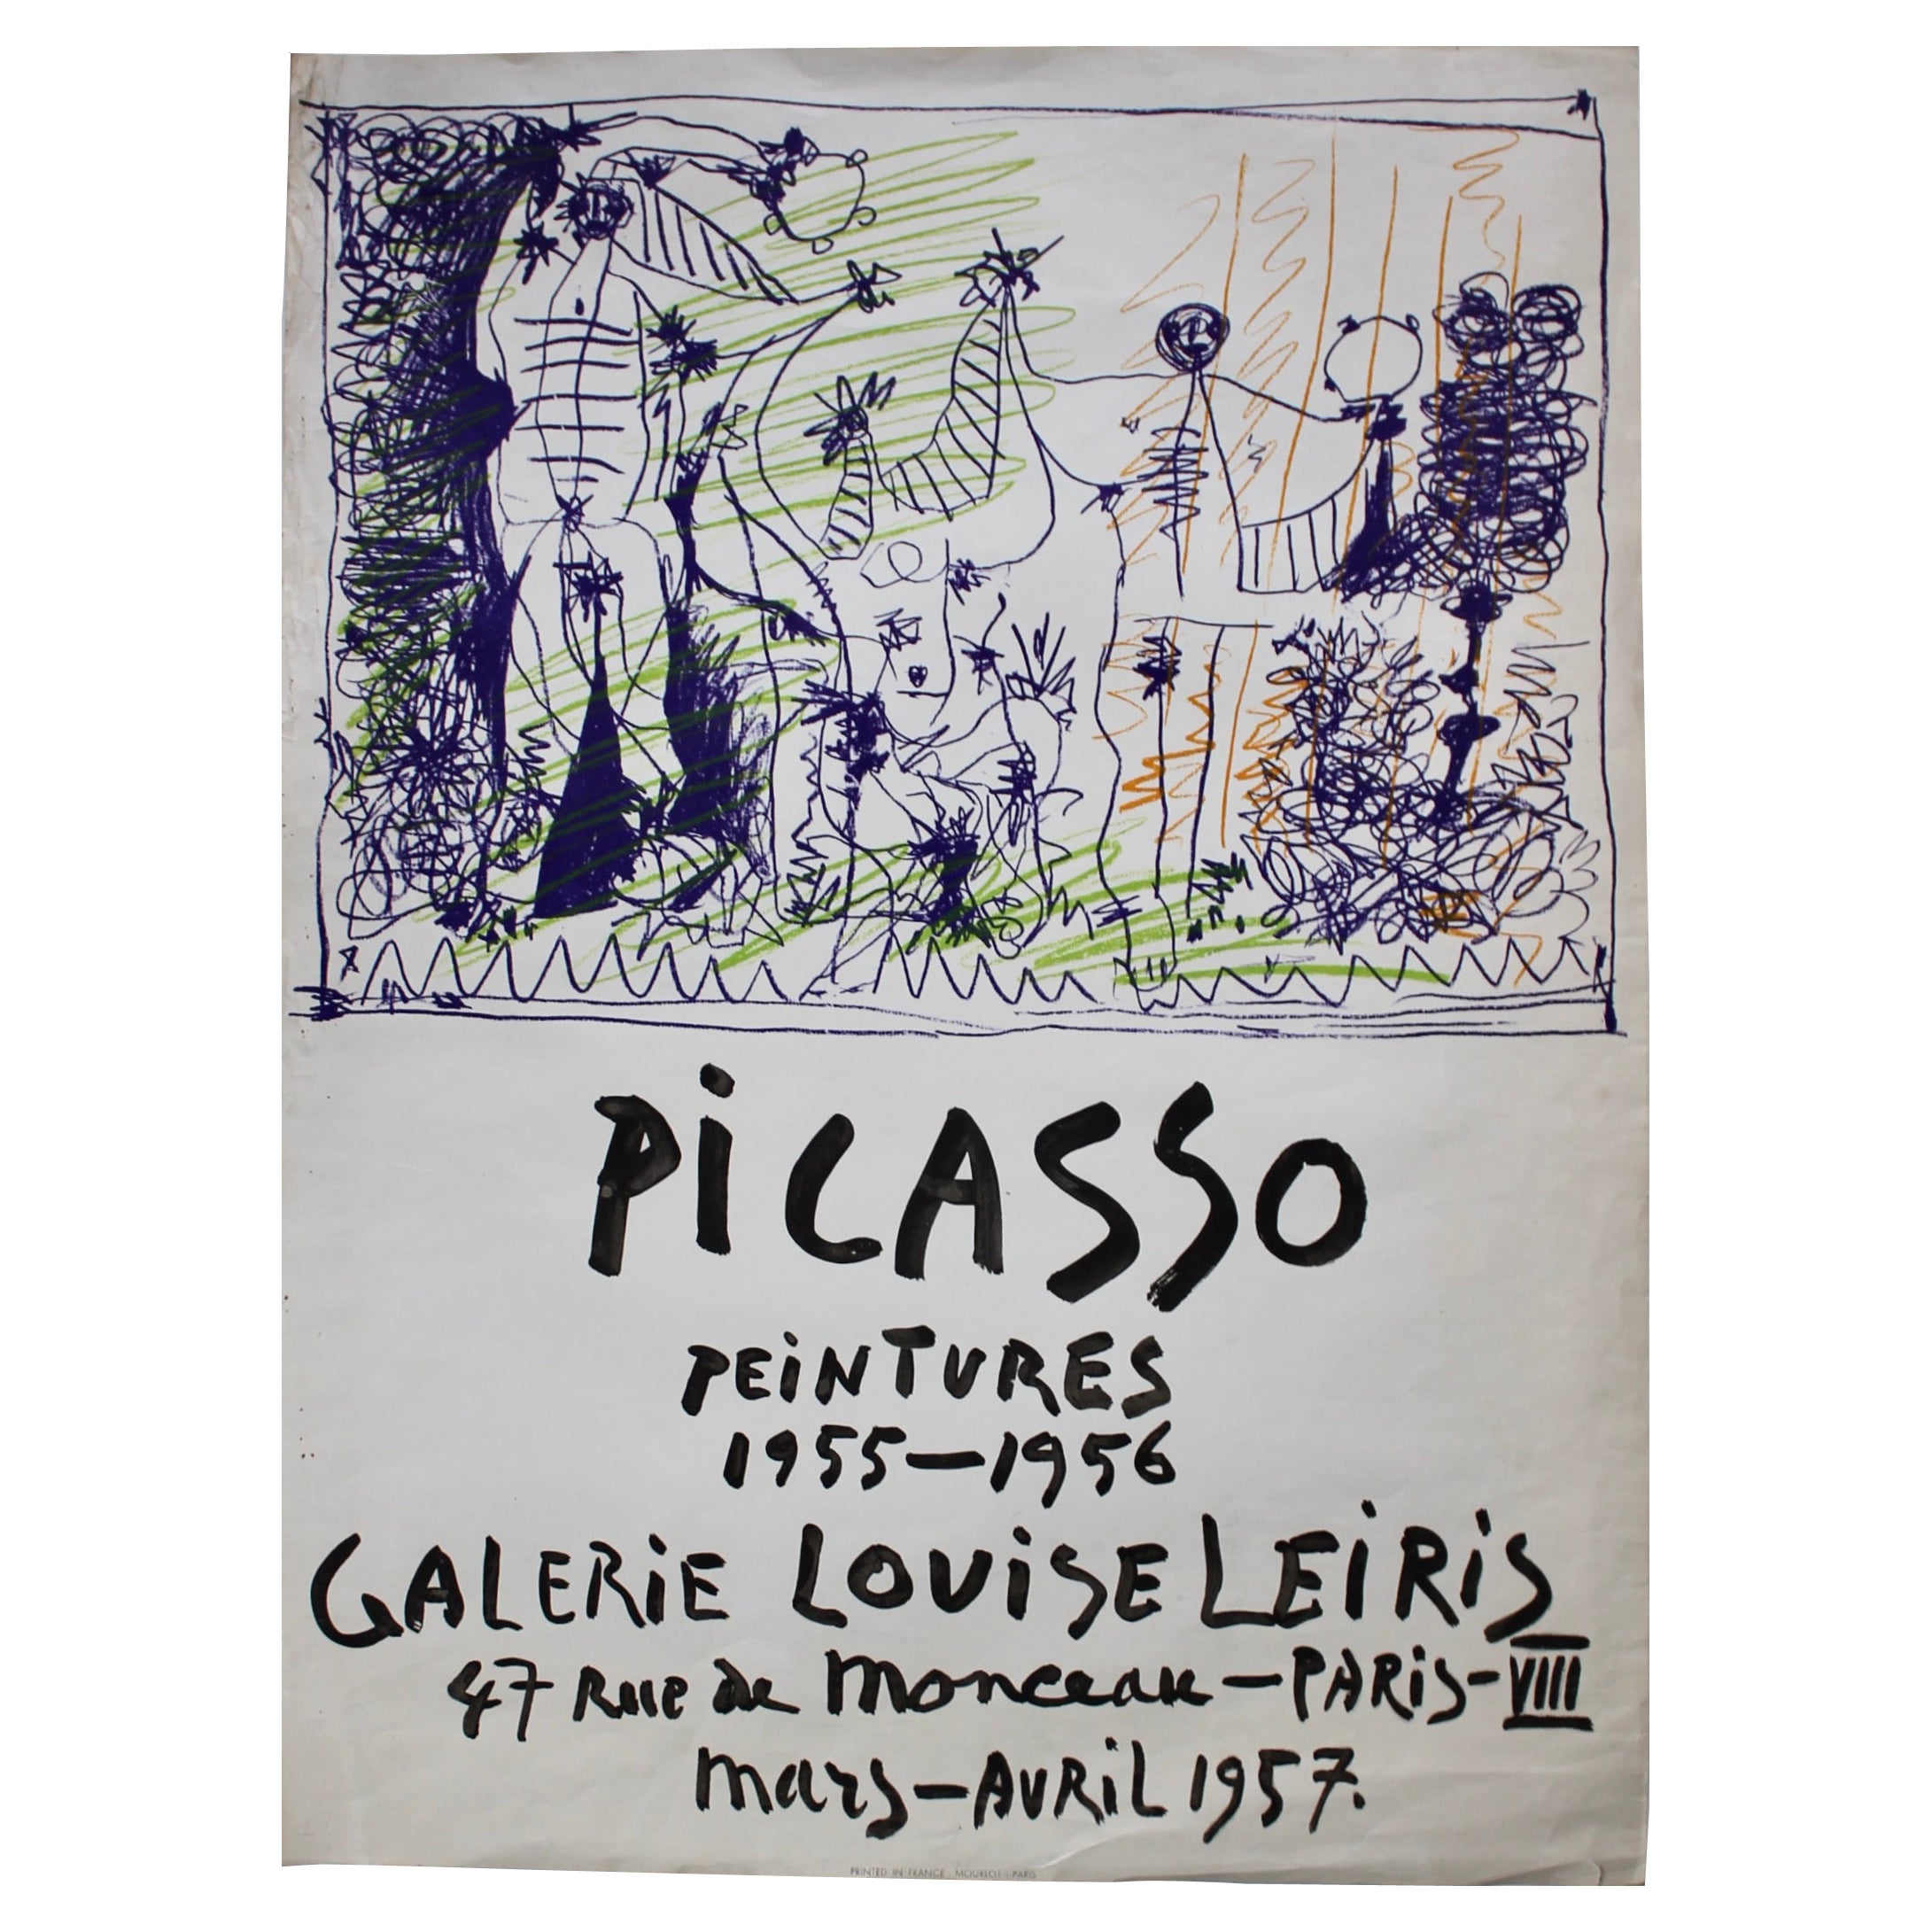 Original Pablo Picasso Poster, 1957, Galerie Louise Leiris